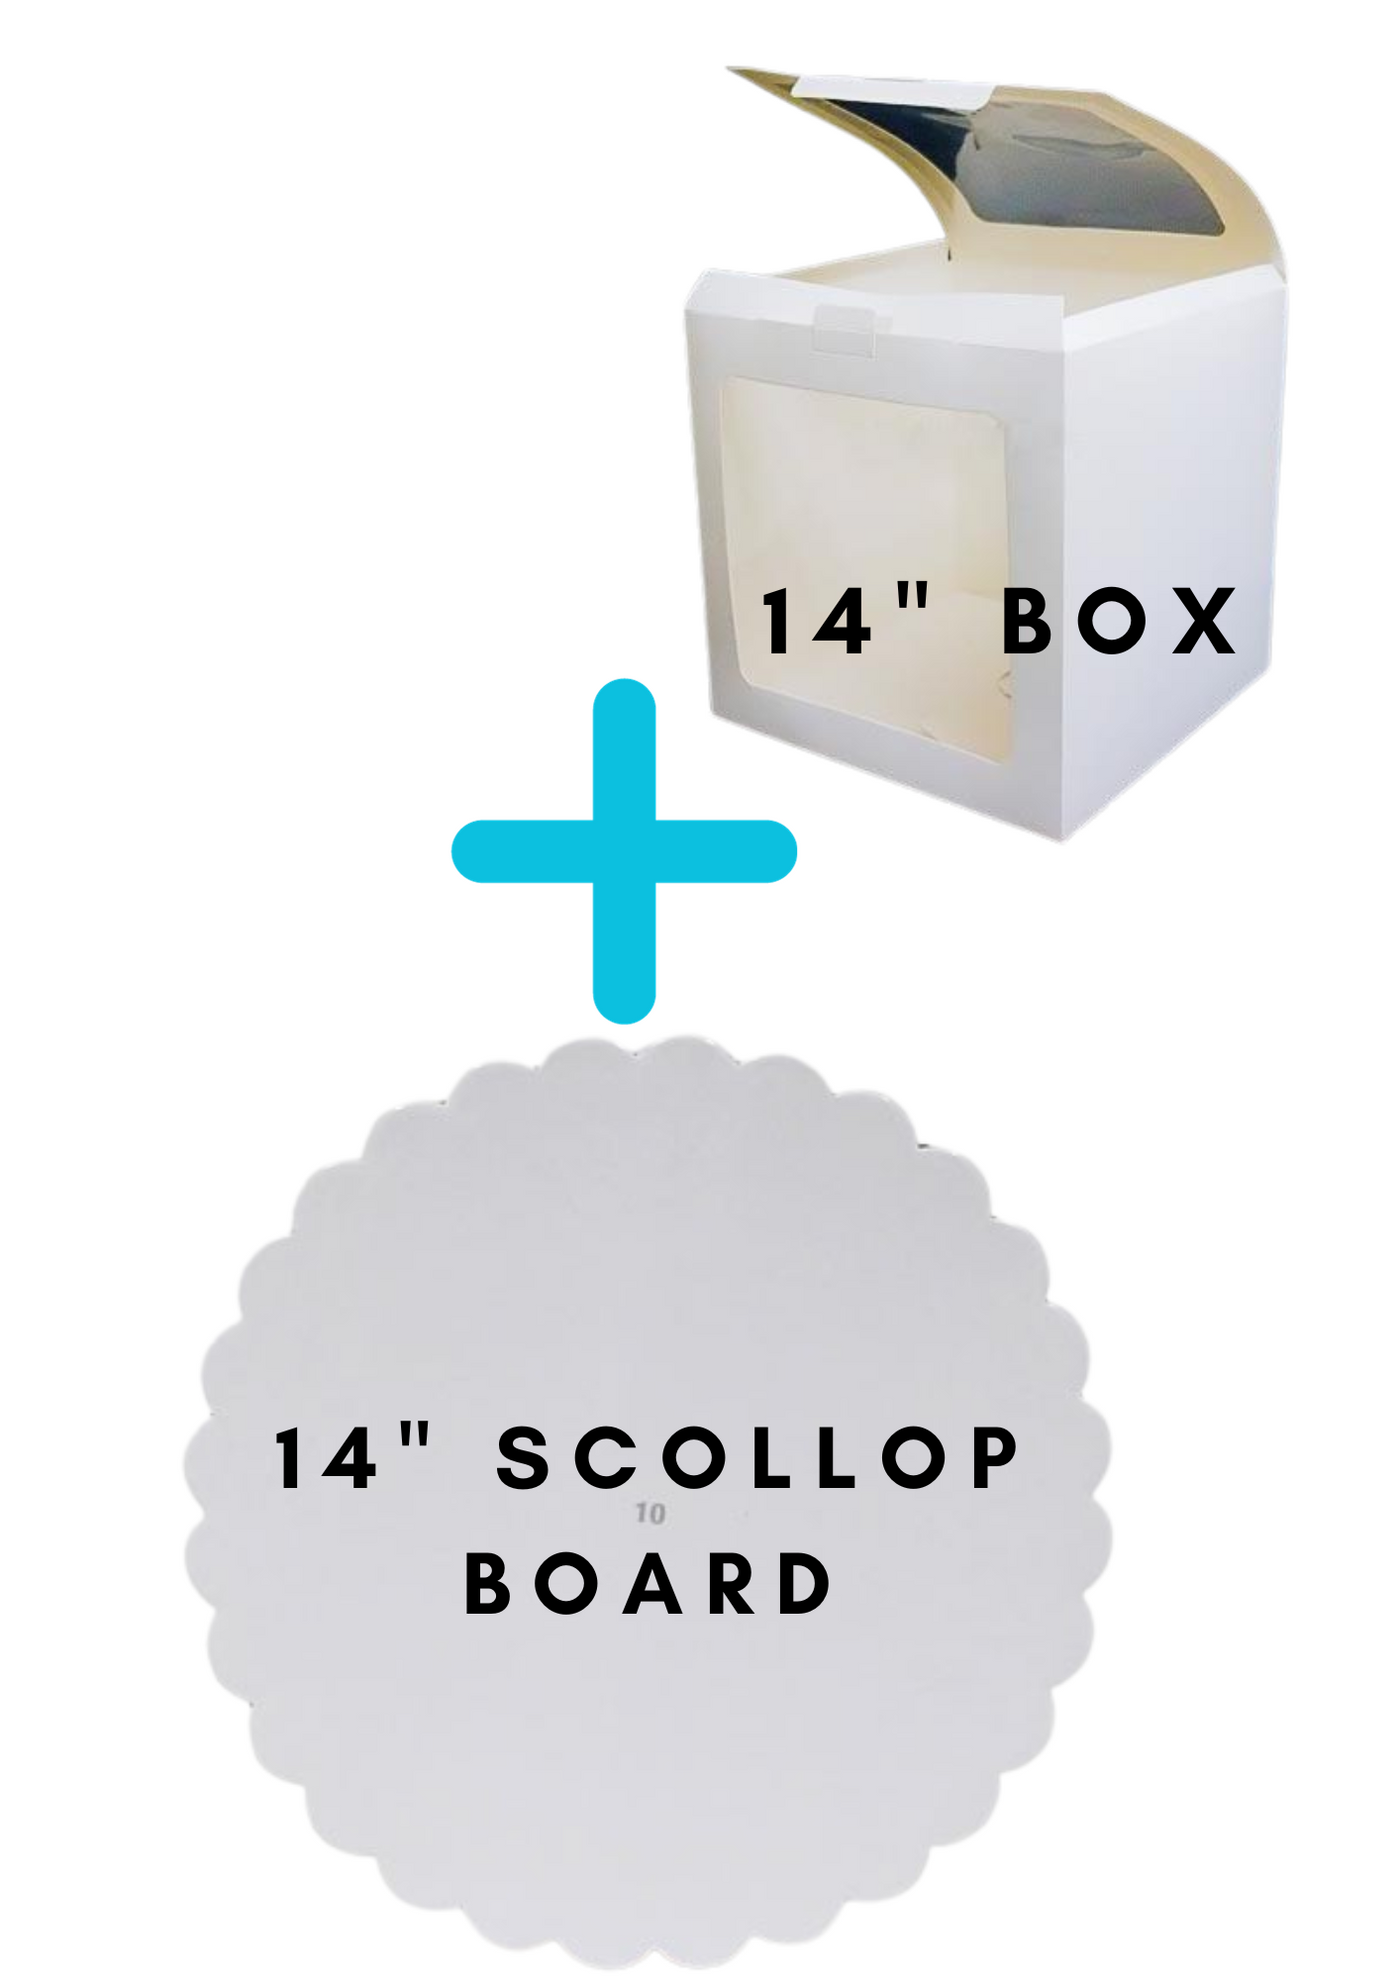 14" Premier Box + 14" Scallop Board combo